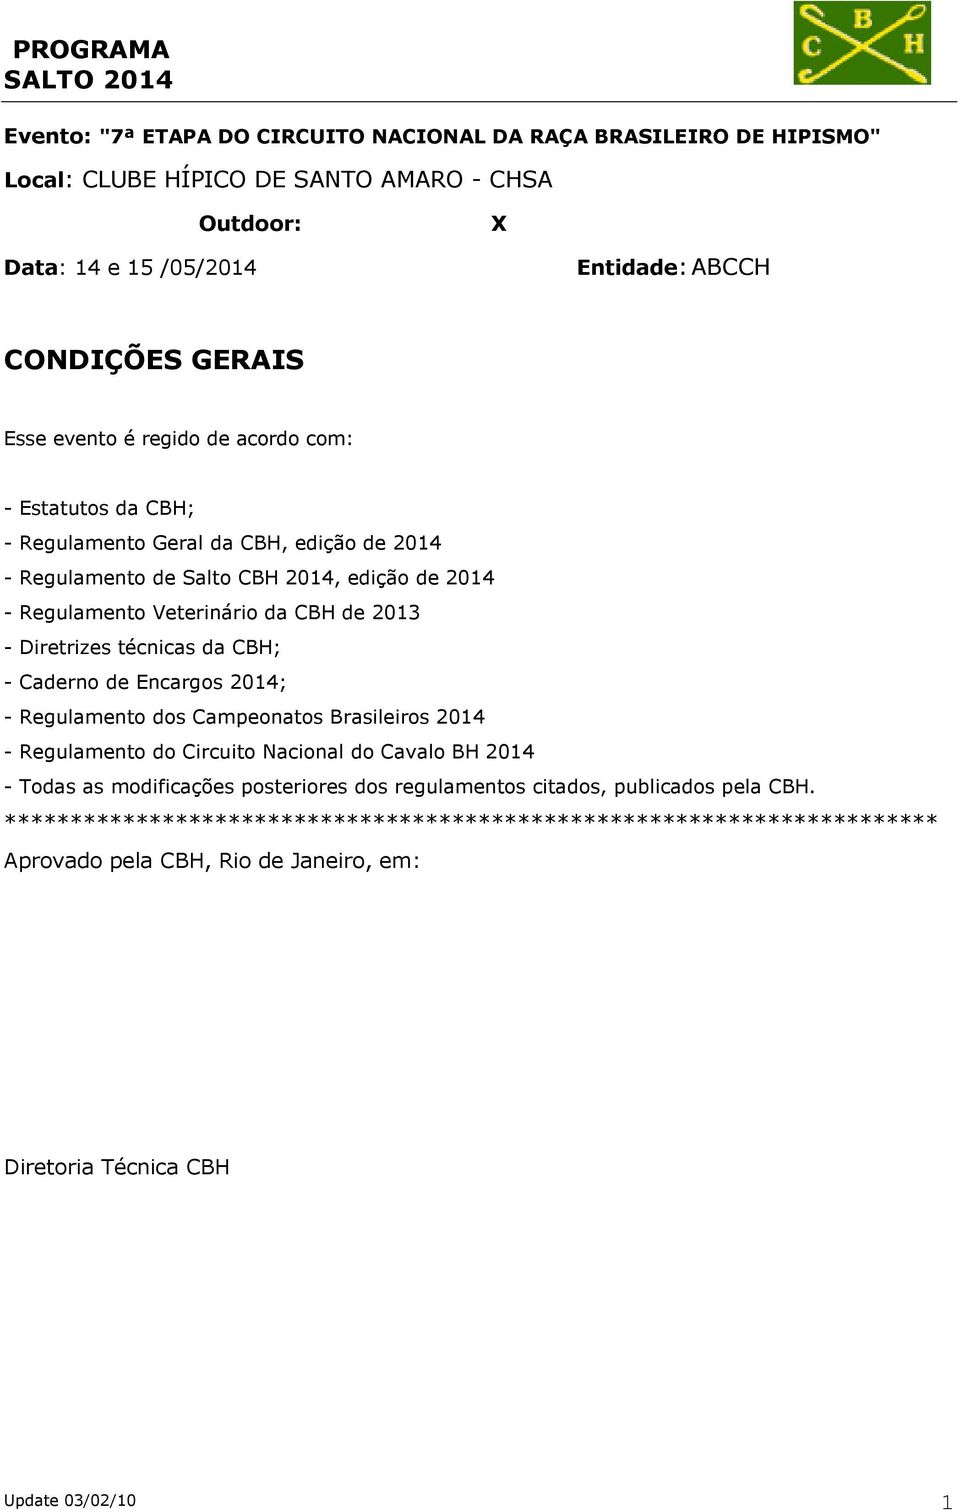 Diretrizes técnicas da CBH; - Caderno de Encargos 2014; - Regulamento dos Campeonatos Brasileiros 2014 - Regulamento do Circuito Nacional do Cavalo BH 2014 - Todas as modificações